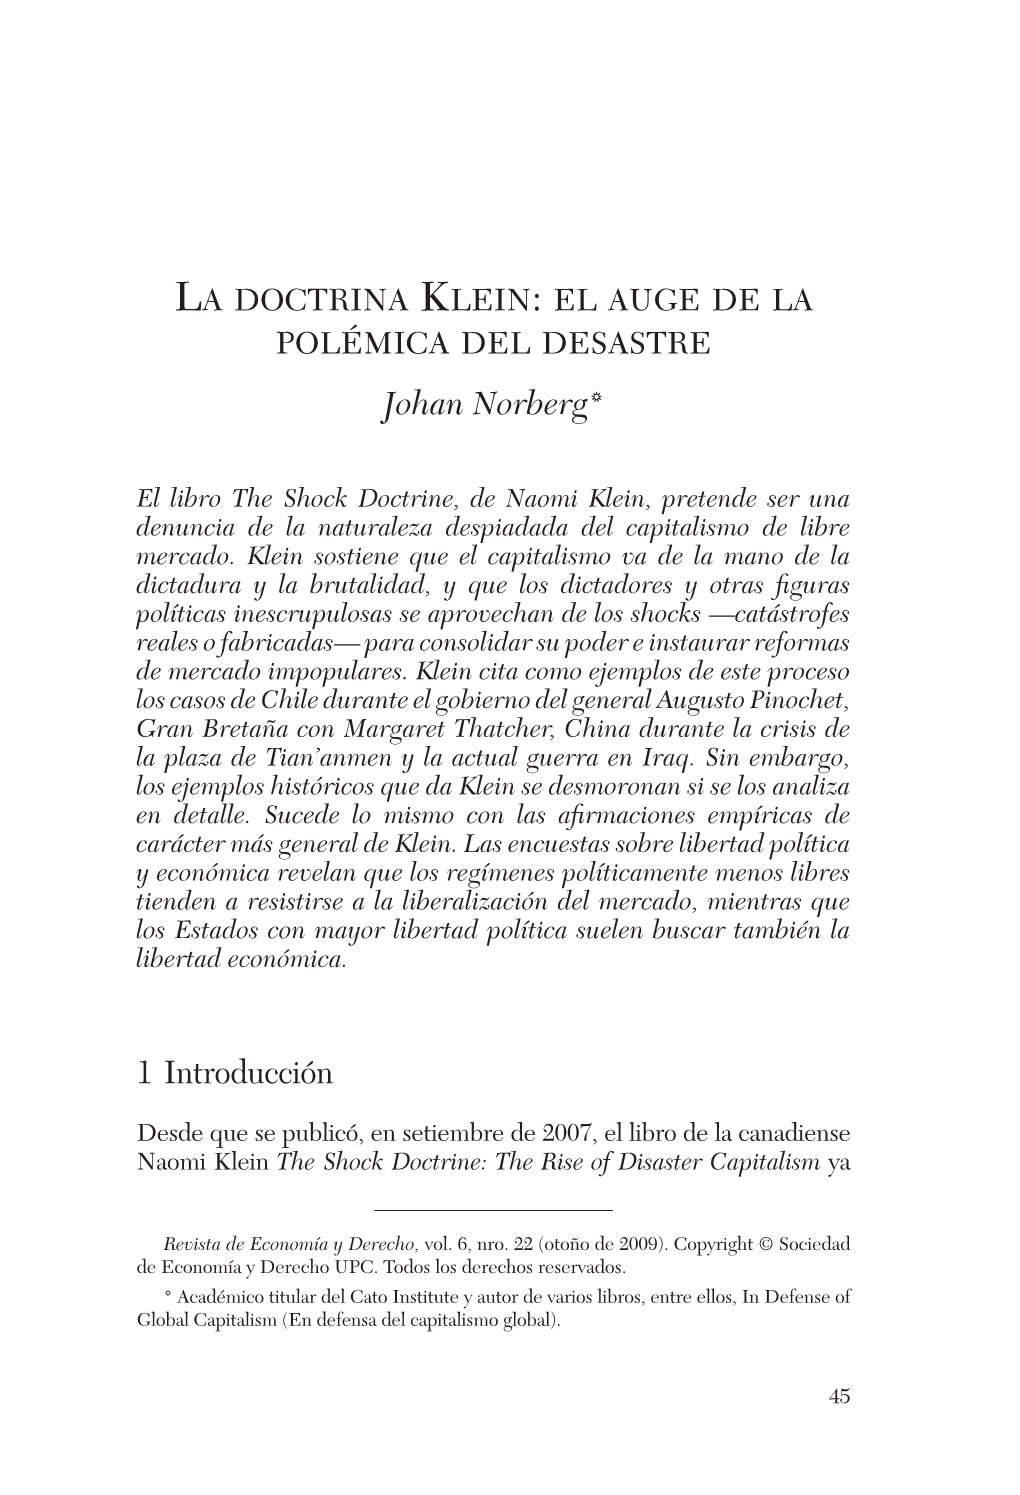 La Doctrina Klein: El Auge De La Polémica Del Desastre Johan Norberg*